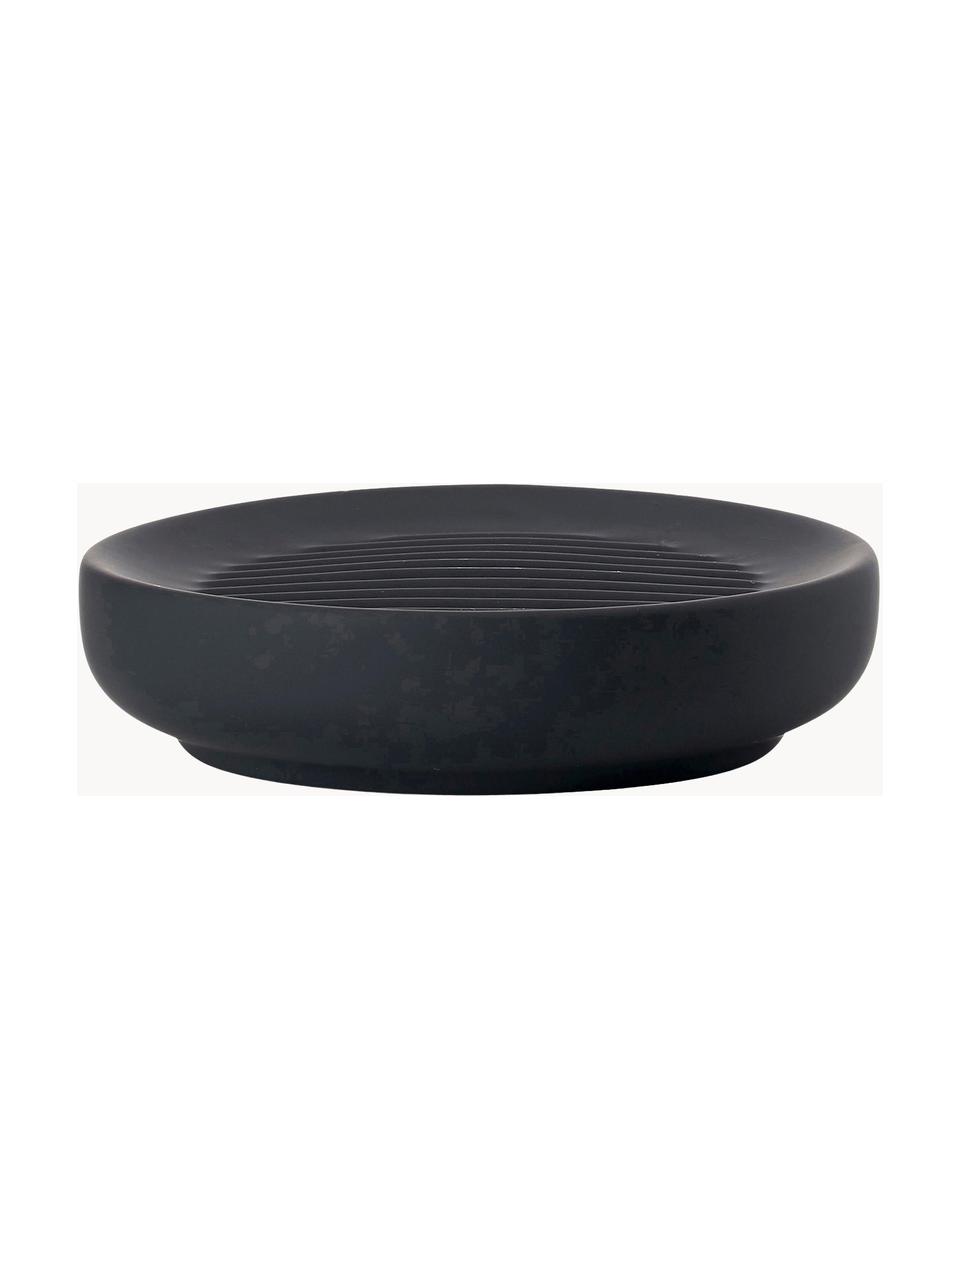 Seifenschale Ume mit Soft-Touch Oberfläche, Steingut überzogen mit Soft-Touch-Oberfläche (Kunststoff), Schwarz, Ø 12 x H 3 cm